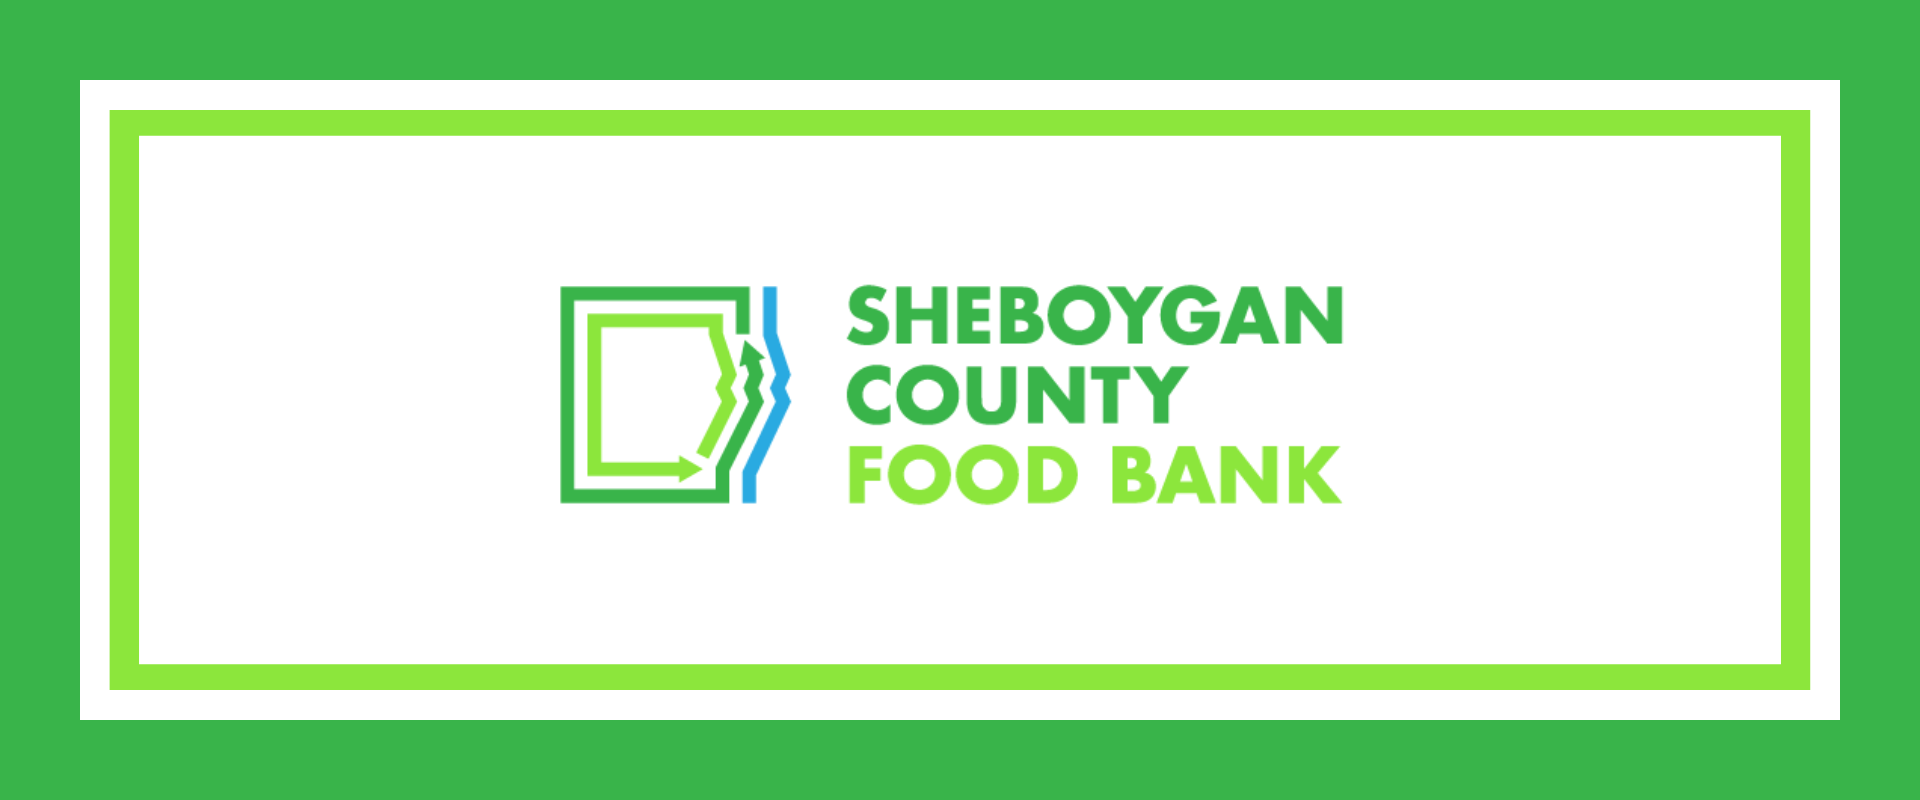 SHEBOYGAN COUNTY FOOD BANK WEB HEADER v2